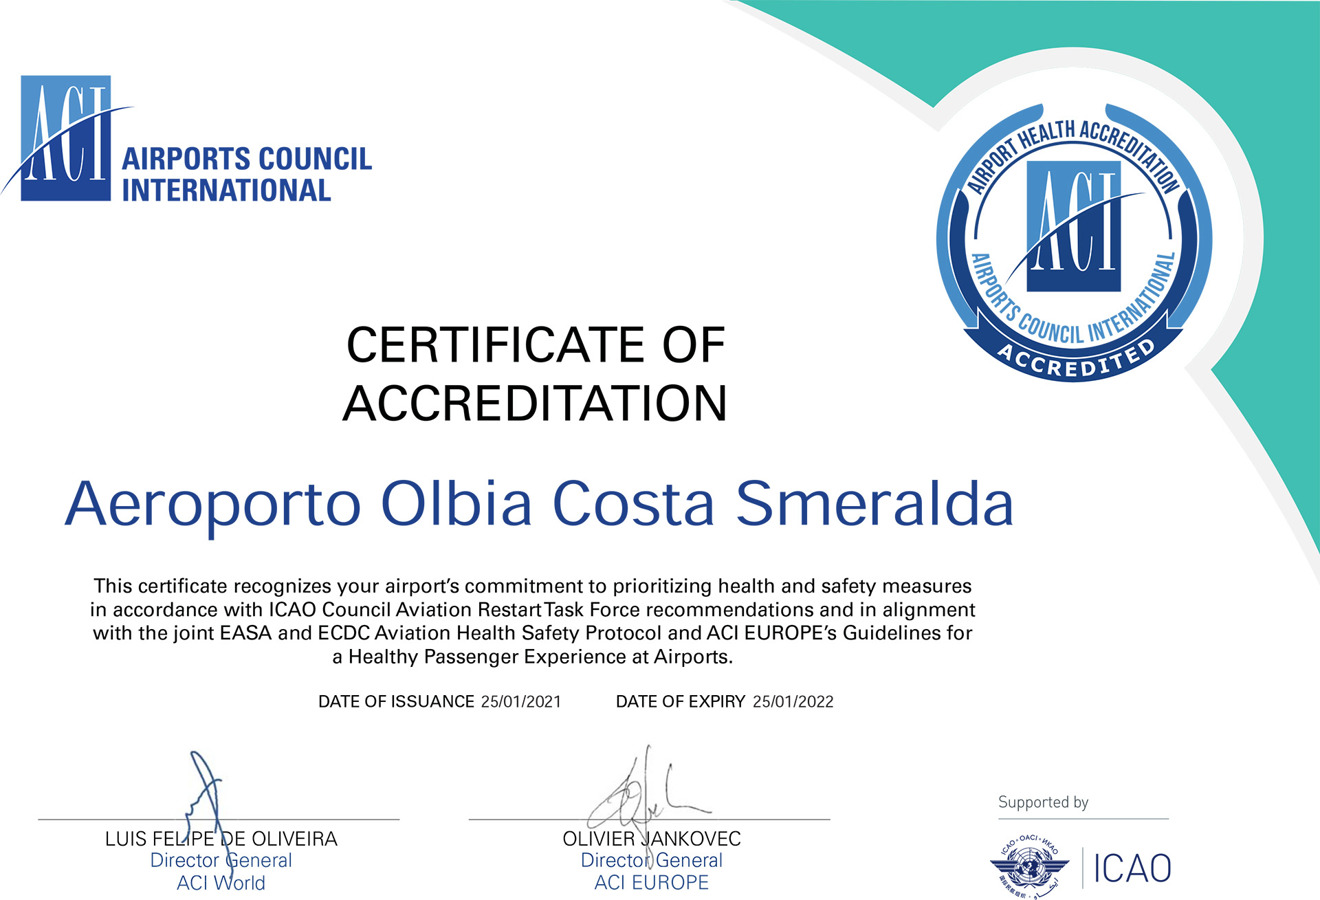 Aeroporto di Olbia certificazione “Airport Health Accreditation”